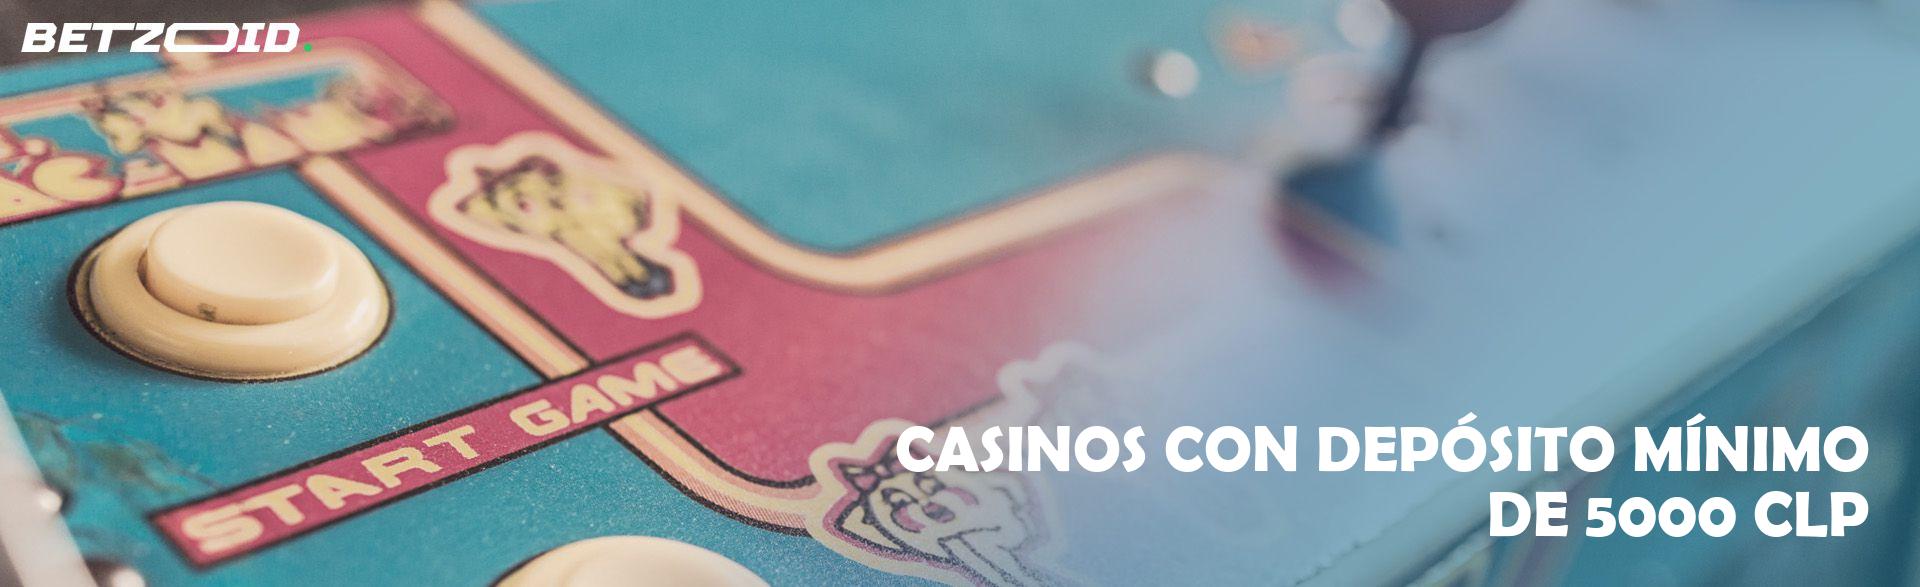 Casinos con Depósito Mínimo de 5000 CLP.